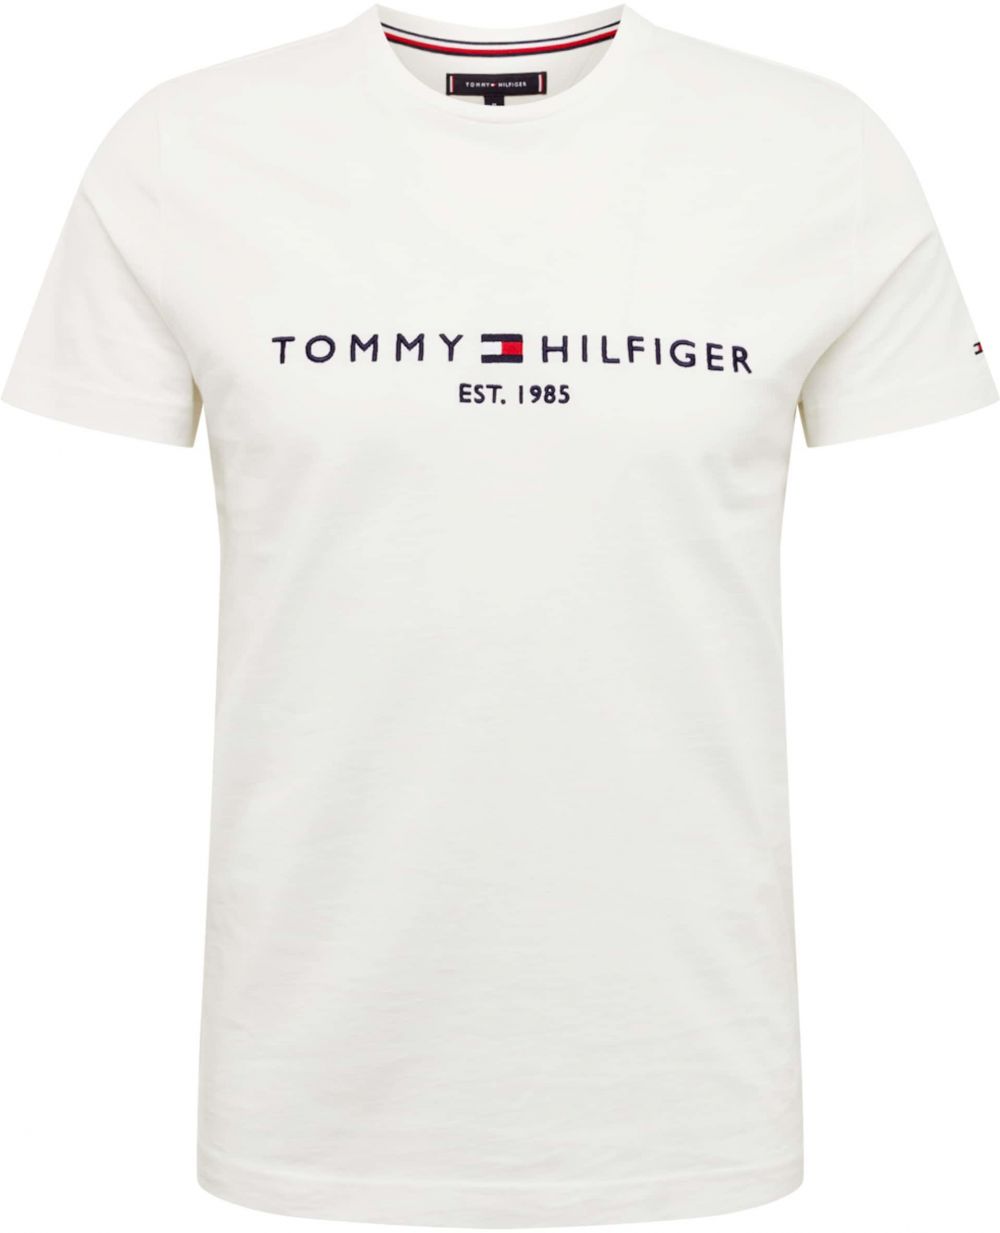 TOMMY HILFIGER Tričko tmavomodrá / / biela značky Tommy Hilfiger - Lovely.sk